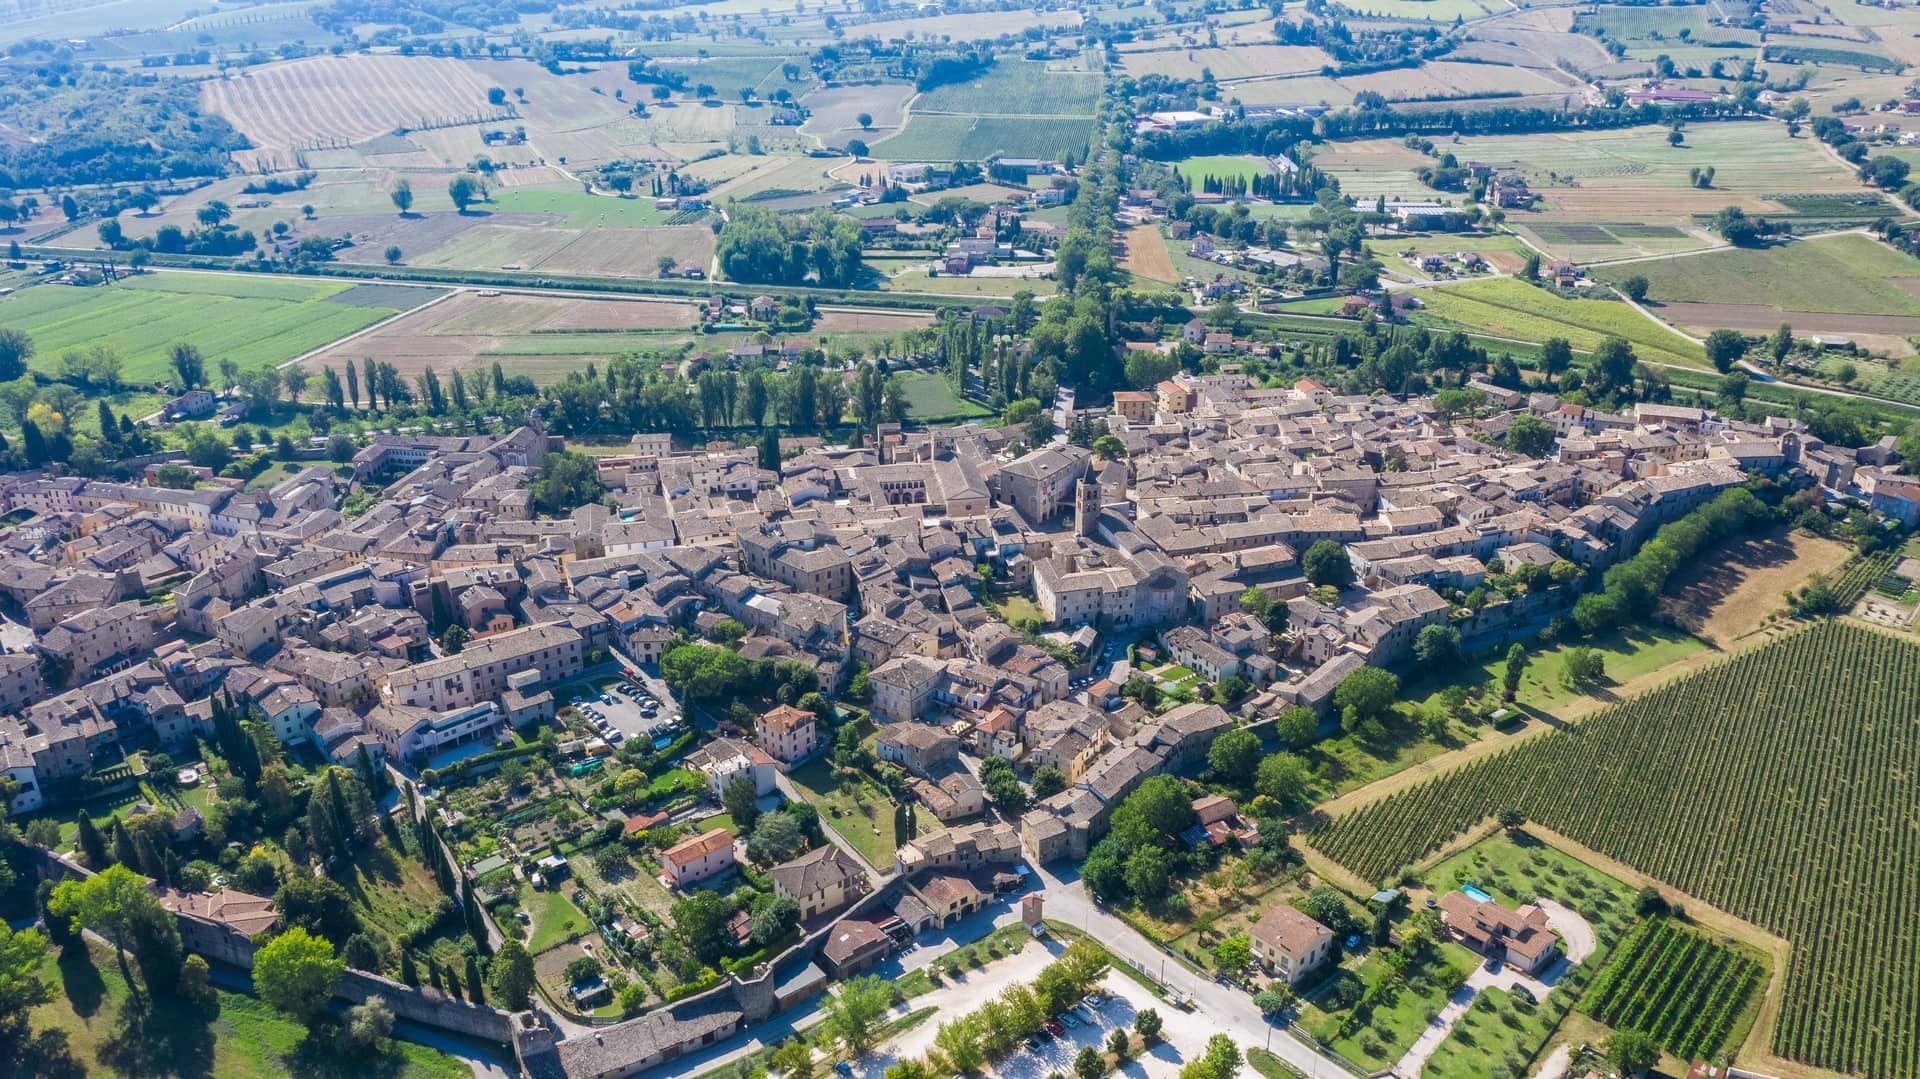 La vista dall'alto di Bevagna, il borgo medievale umbro. Si può notare la sua forma a fortezza con le tante case medievali tutte incorporate al centro. Intorno il verde delle coltivazioni e dei colli.